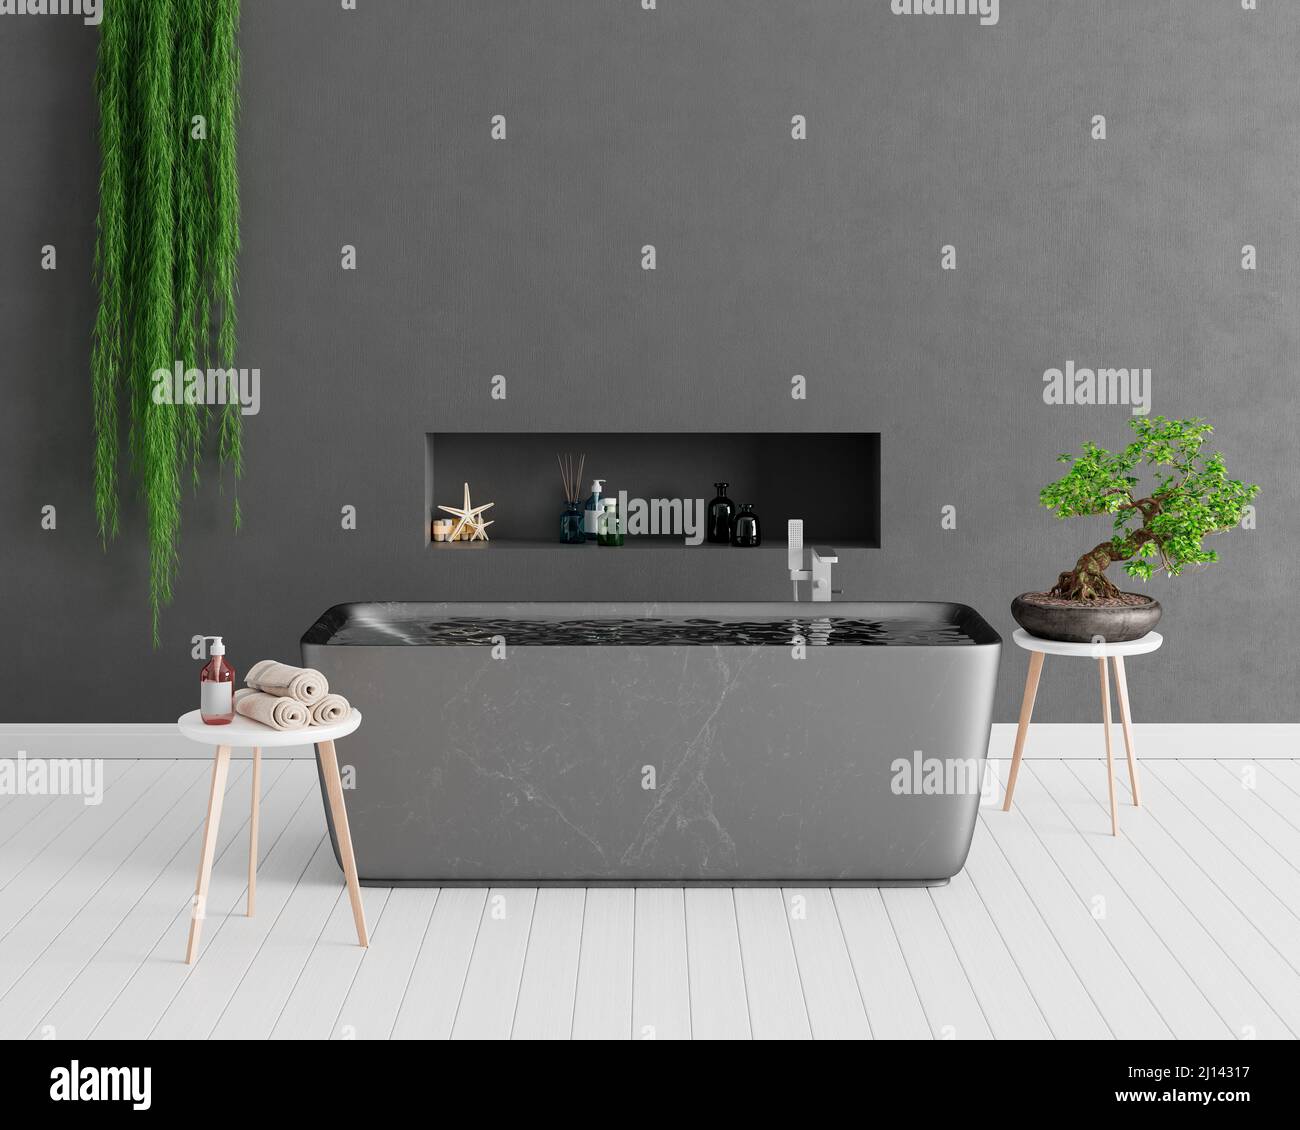 Interni dal design moderno con bagno con parete in cemento e ornamentale green plants 3d rendering illustrazione 3d Foto Stock